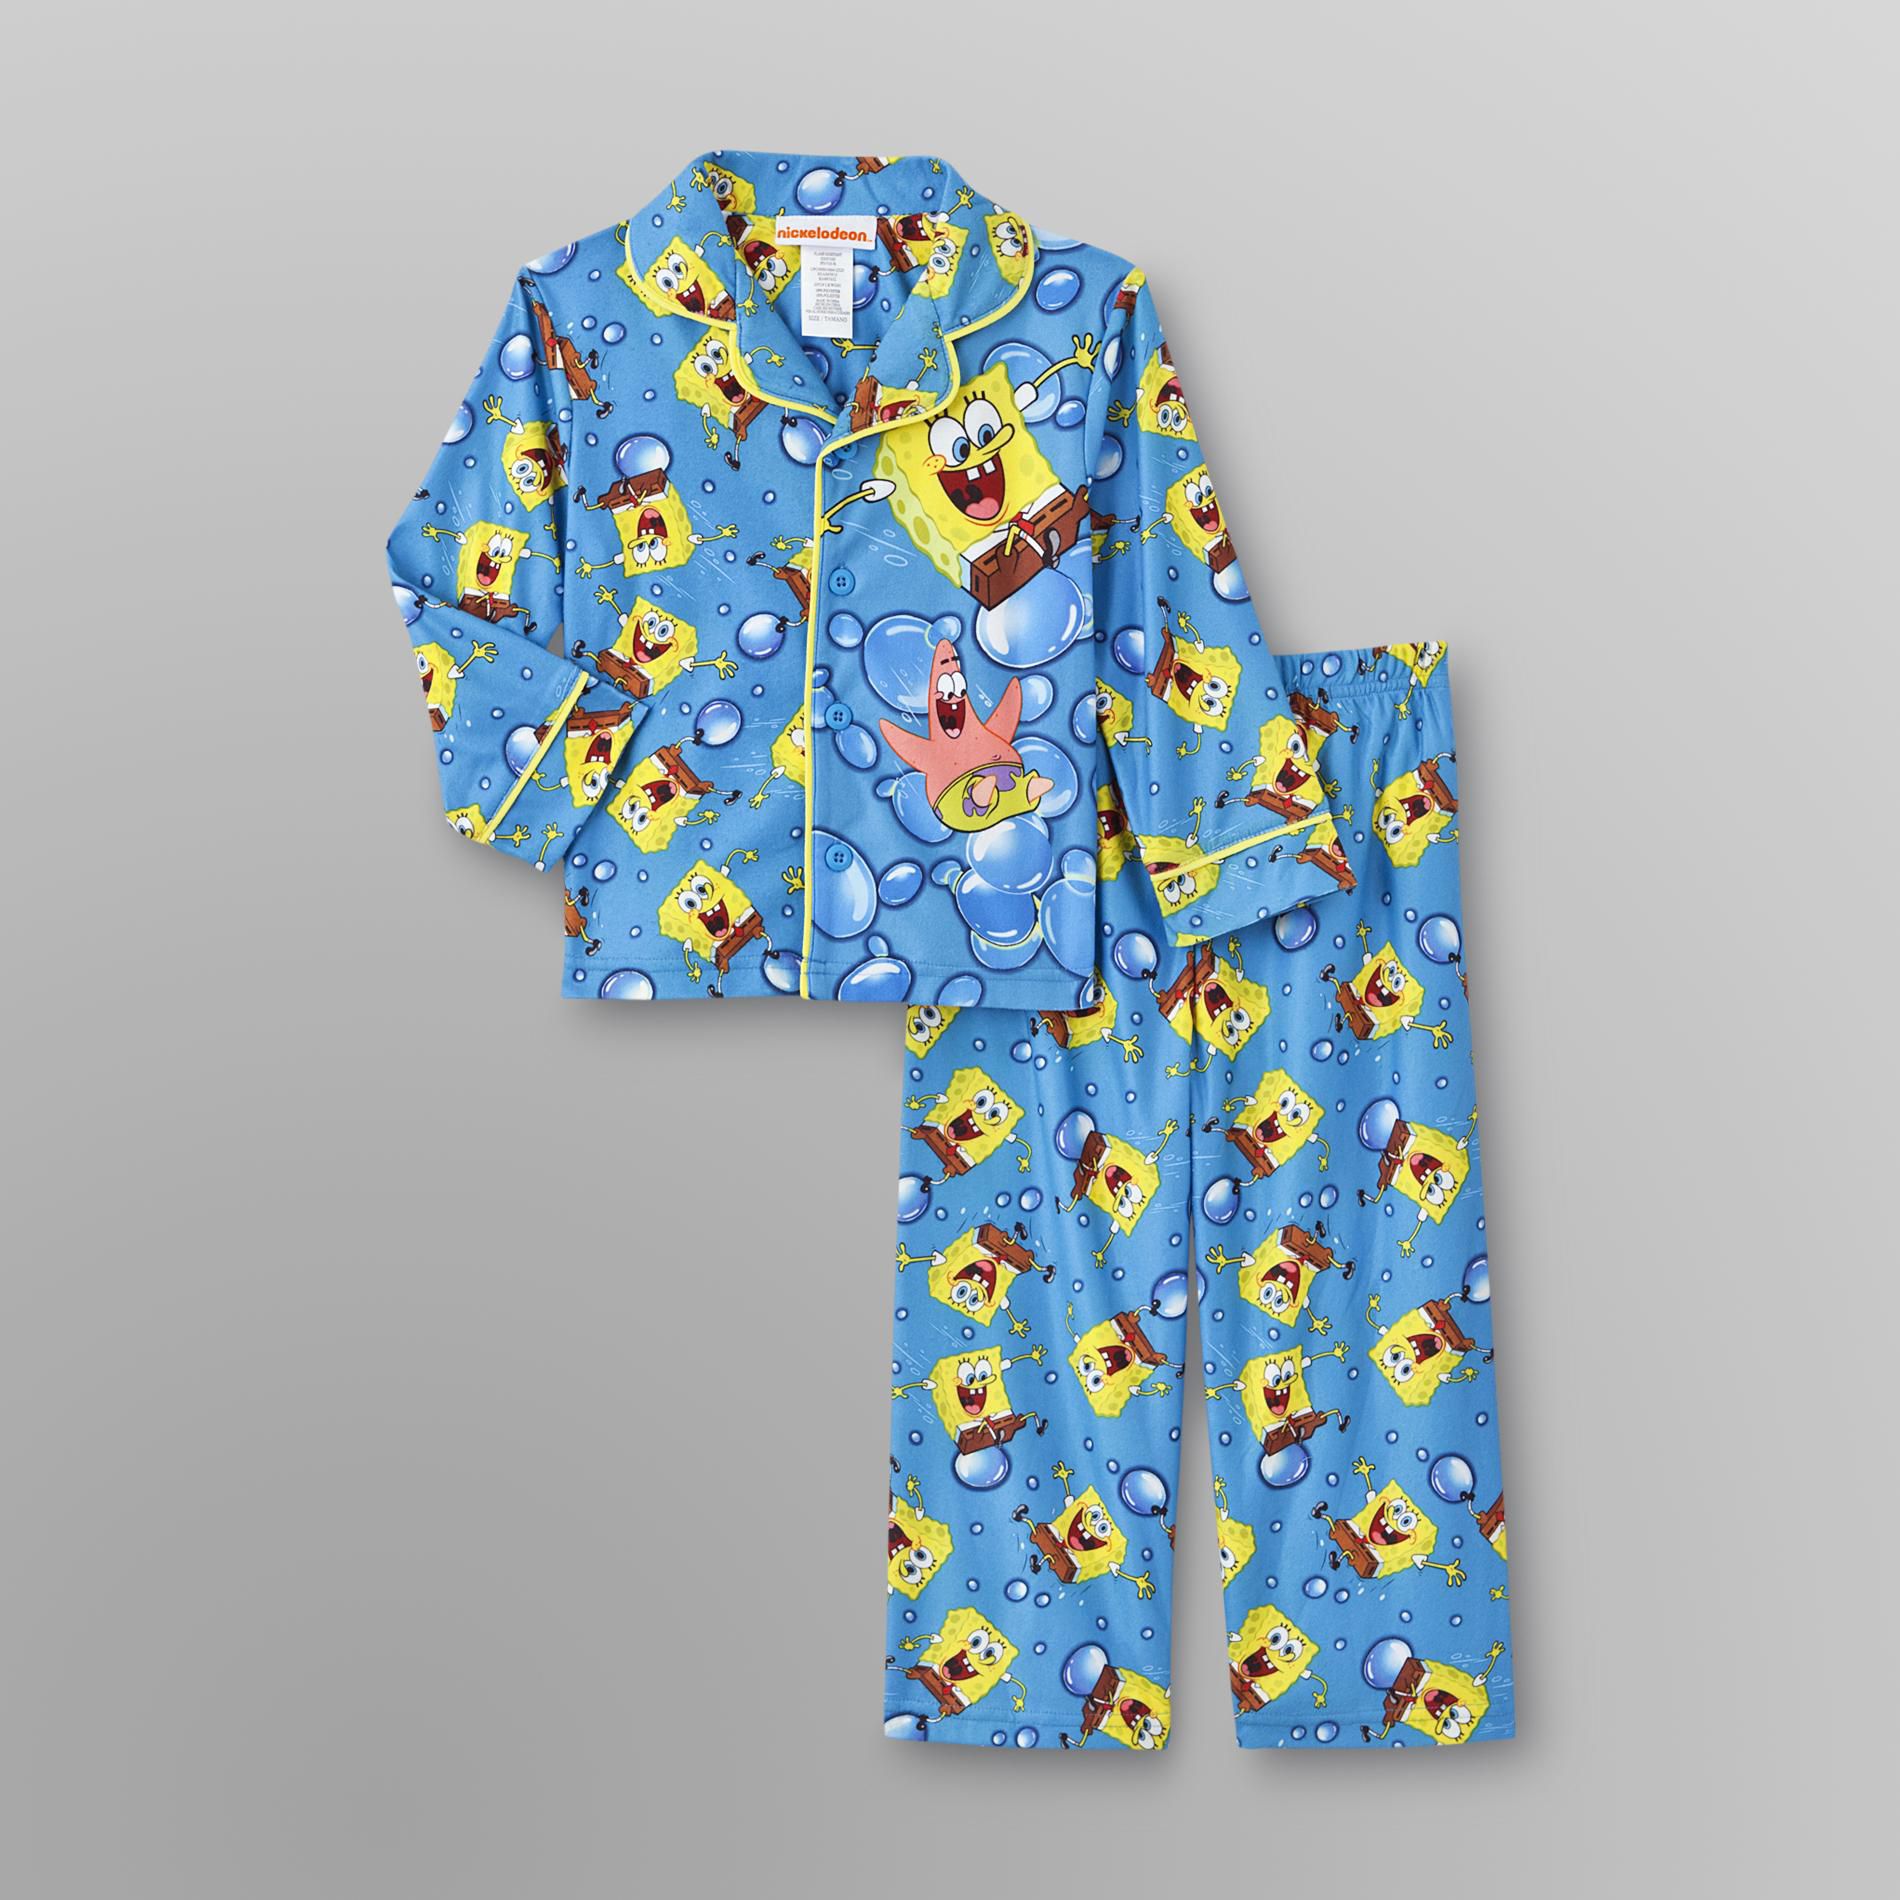 Nickelodeon SpongeBob SquarePants Toddler Boy's Pajamas